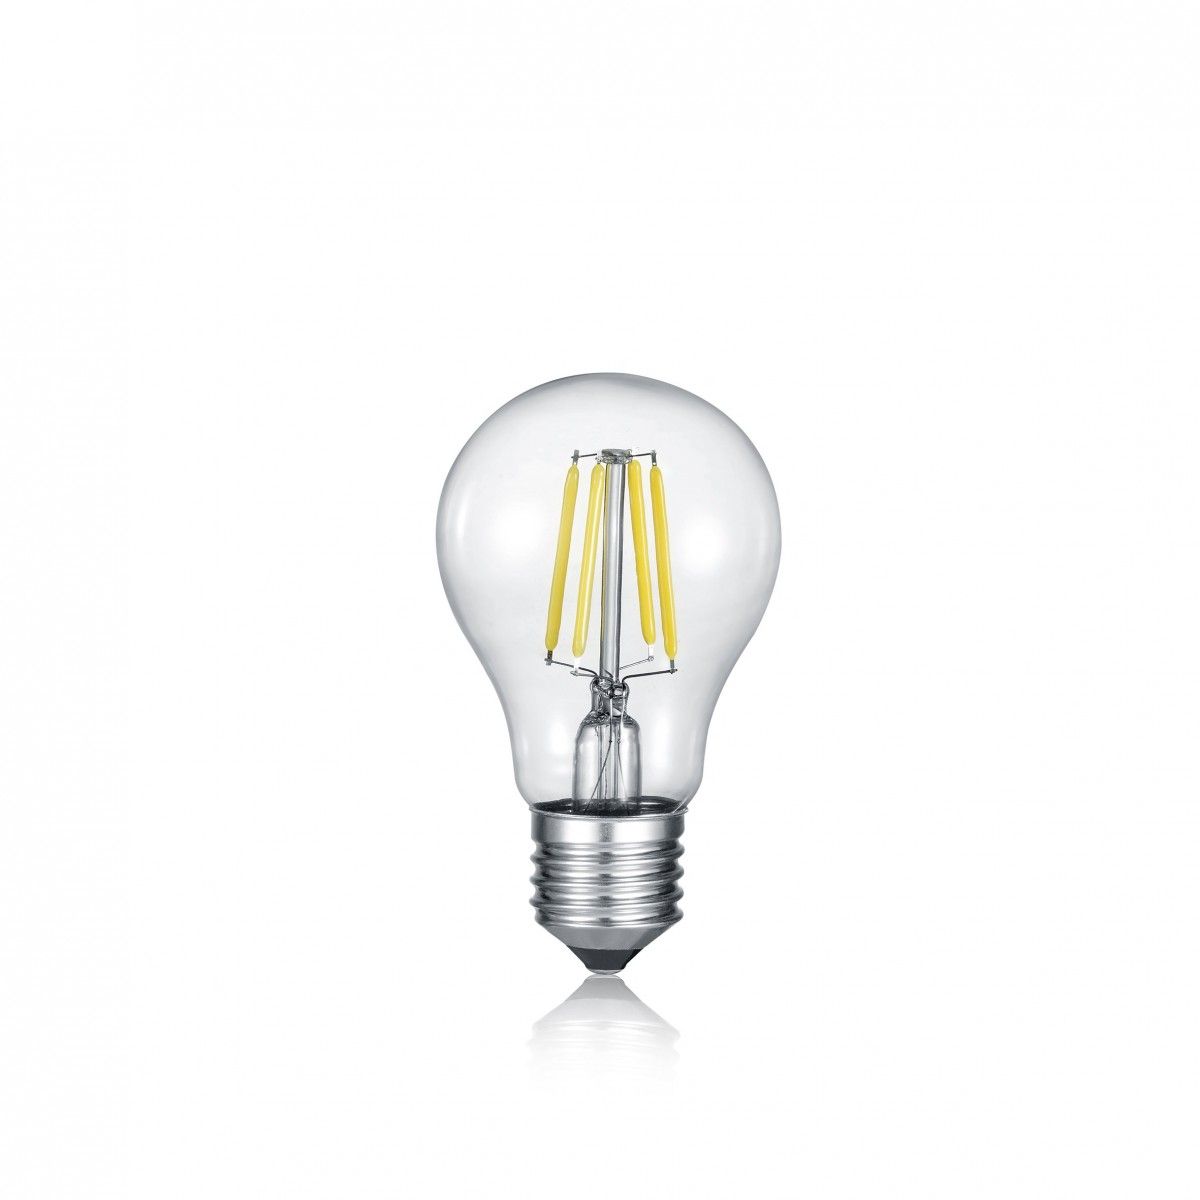 Trio 987-6810 LED filamentová žárovka Lampe 1x8W | E27 | 806lm | 2700K - SWITCHDIMMER - Dekolamp s.r.o.